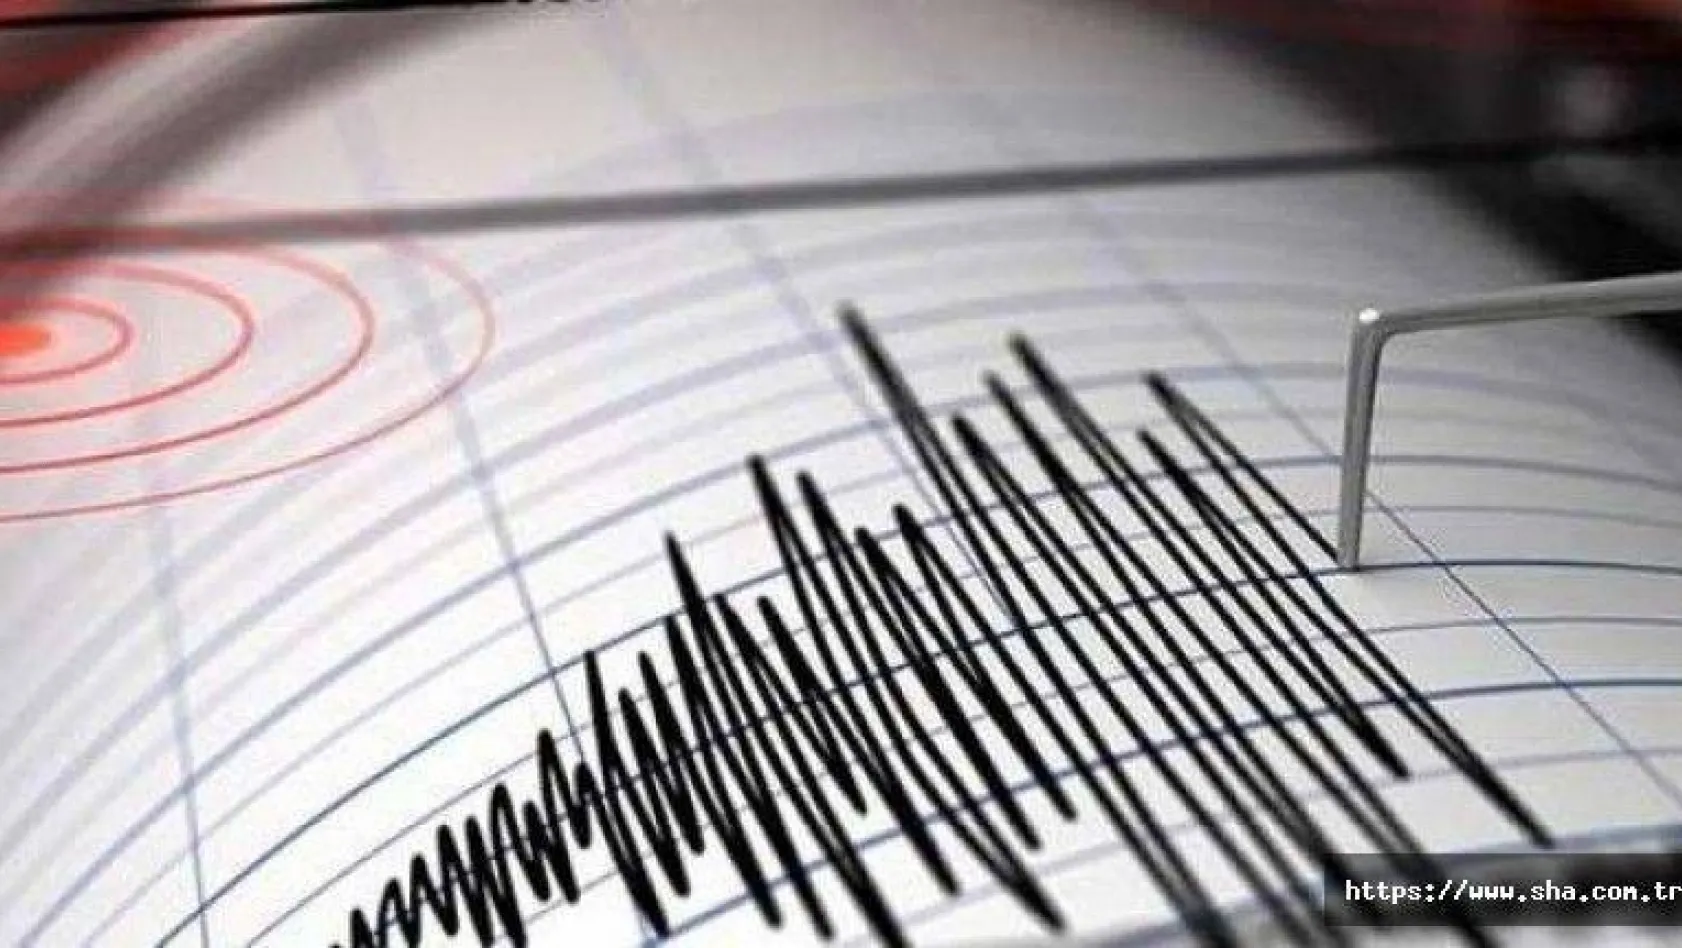 Marmara Denizin'de deprem uyarısı